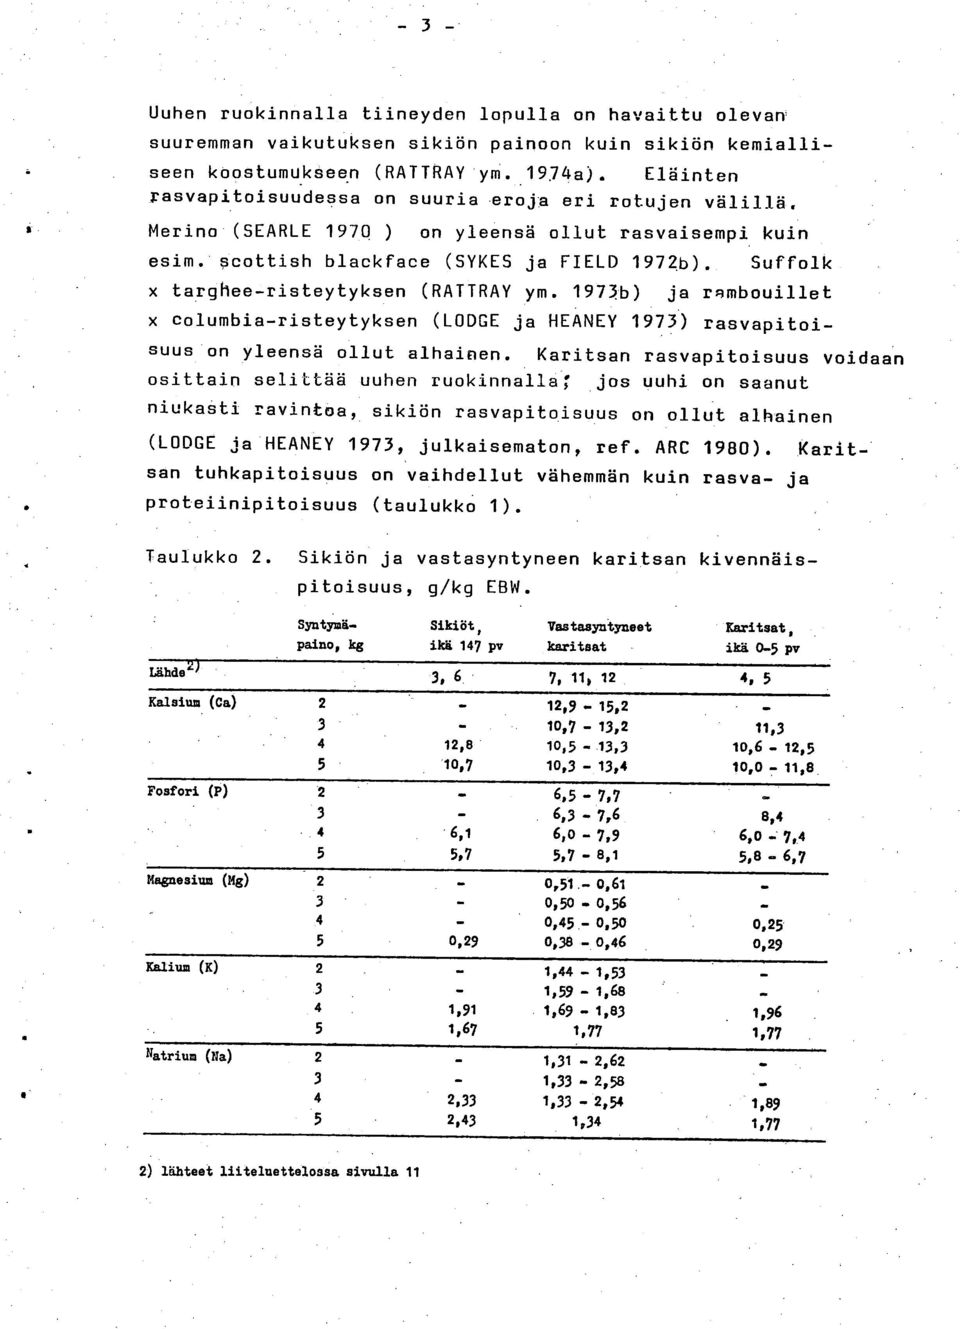 Suffolk x targhee-risteytyksen (RATTRAY ym. 1973b) ja rambouillet x dolumbia-risteytyksen (LODGE ja HEANEY 1973) rasvapitoi- suus on yleensä ollut alhainen.